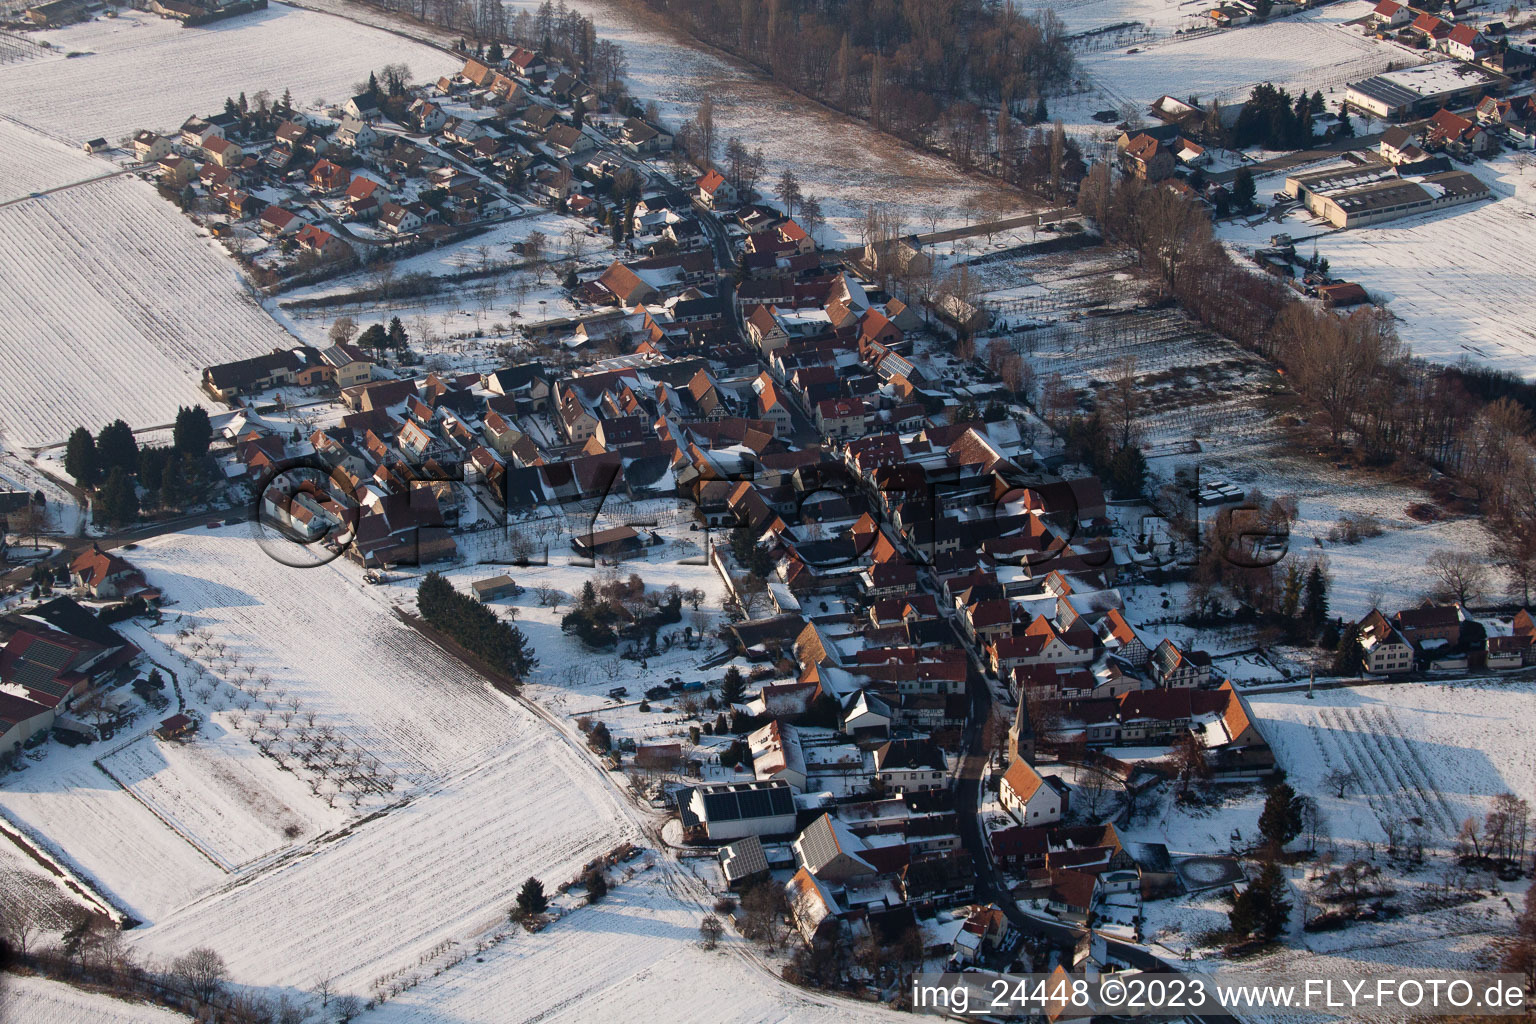 Aerial view of In winter in the district Klingen in Heuchelheim-Klingen in the state Rhineland-Palatinate, Germany